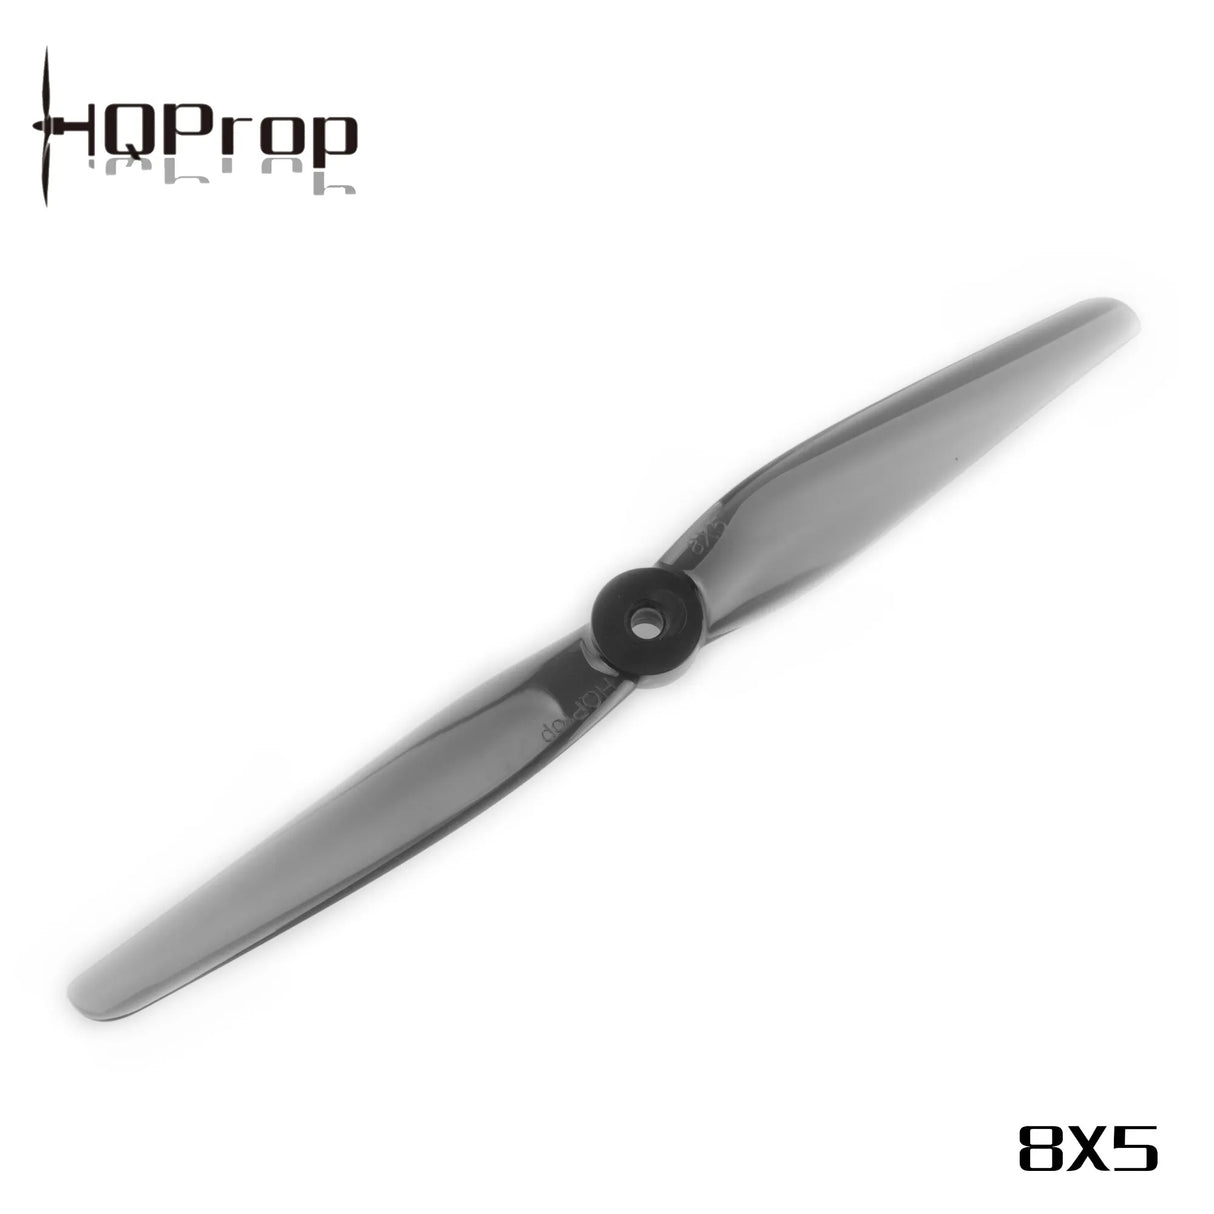 HQProp 8x5 Propeller - DroneDynamics.ca